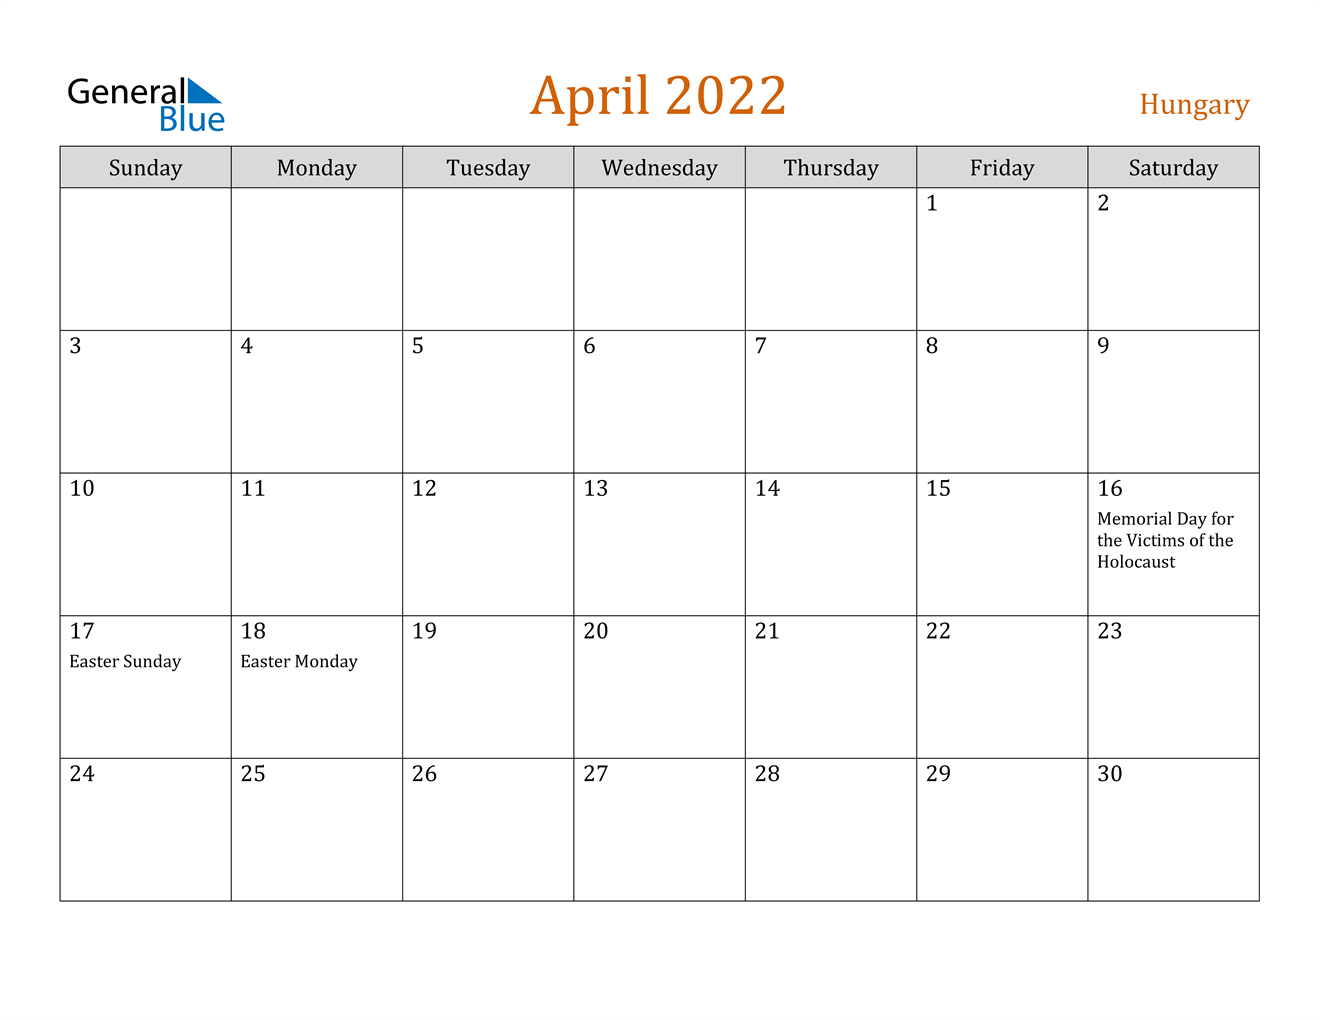 Hungary April 2022 Calendar With Holidays  November 2022 - April 2022 Calendar